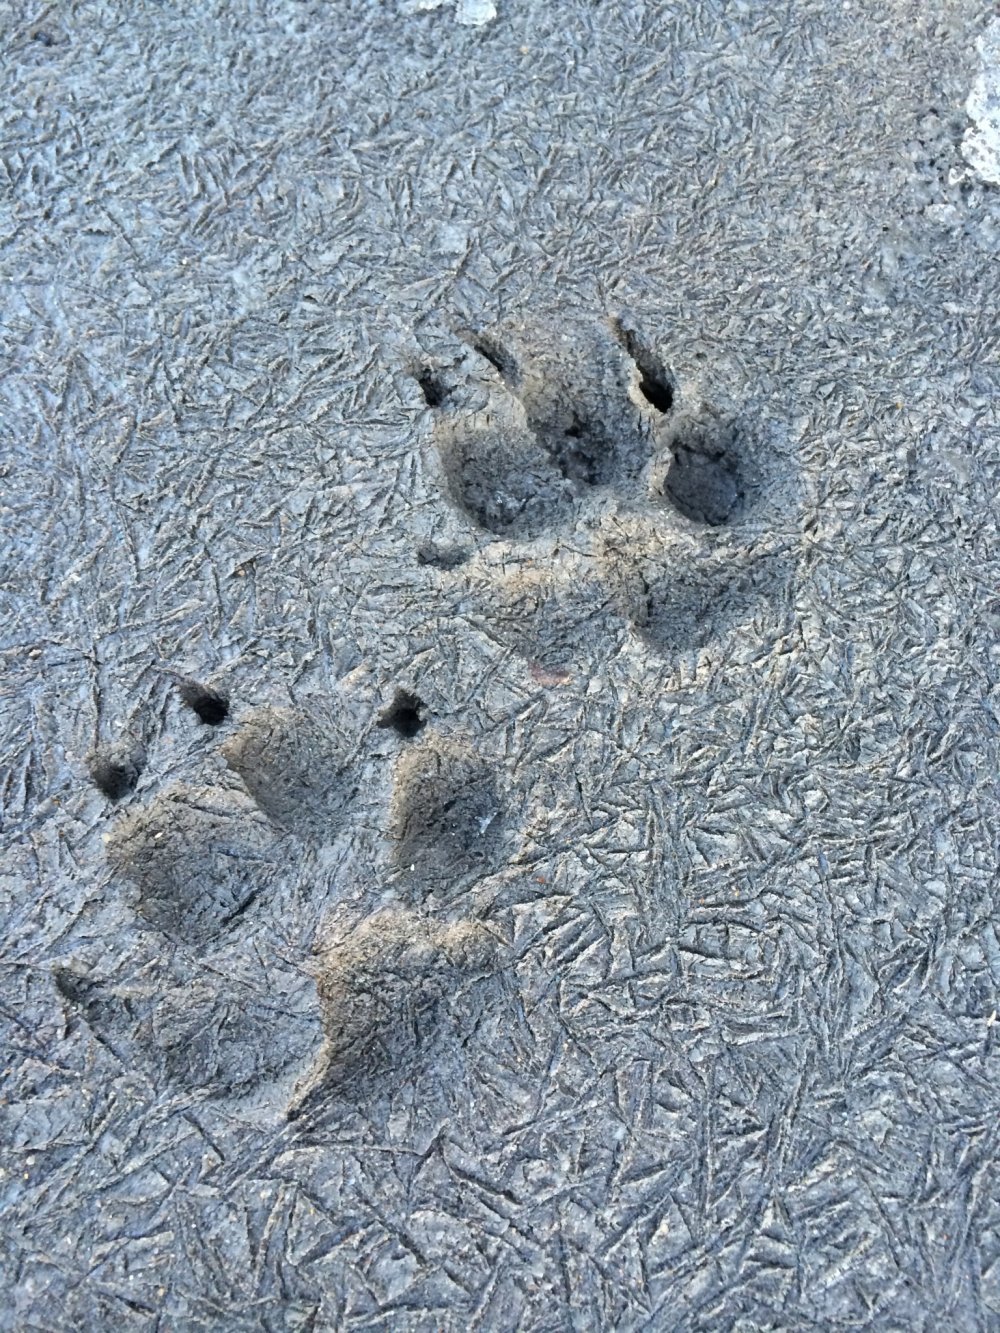 Mungkin seekor anjing sedang berjalan-jalan di hari yang dingin. Kita dapat mengetahui dari jejak kakinya karena tidak ada salju di tanah!
